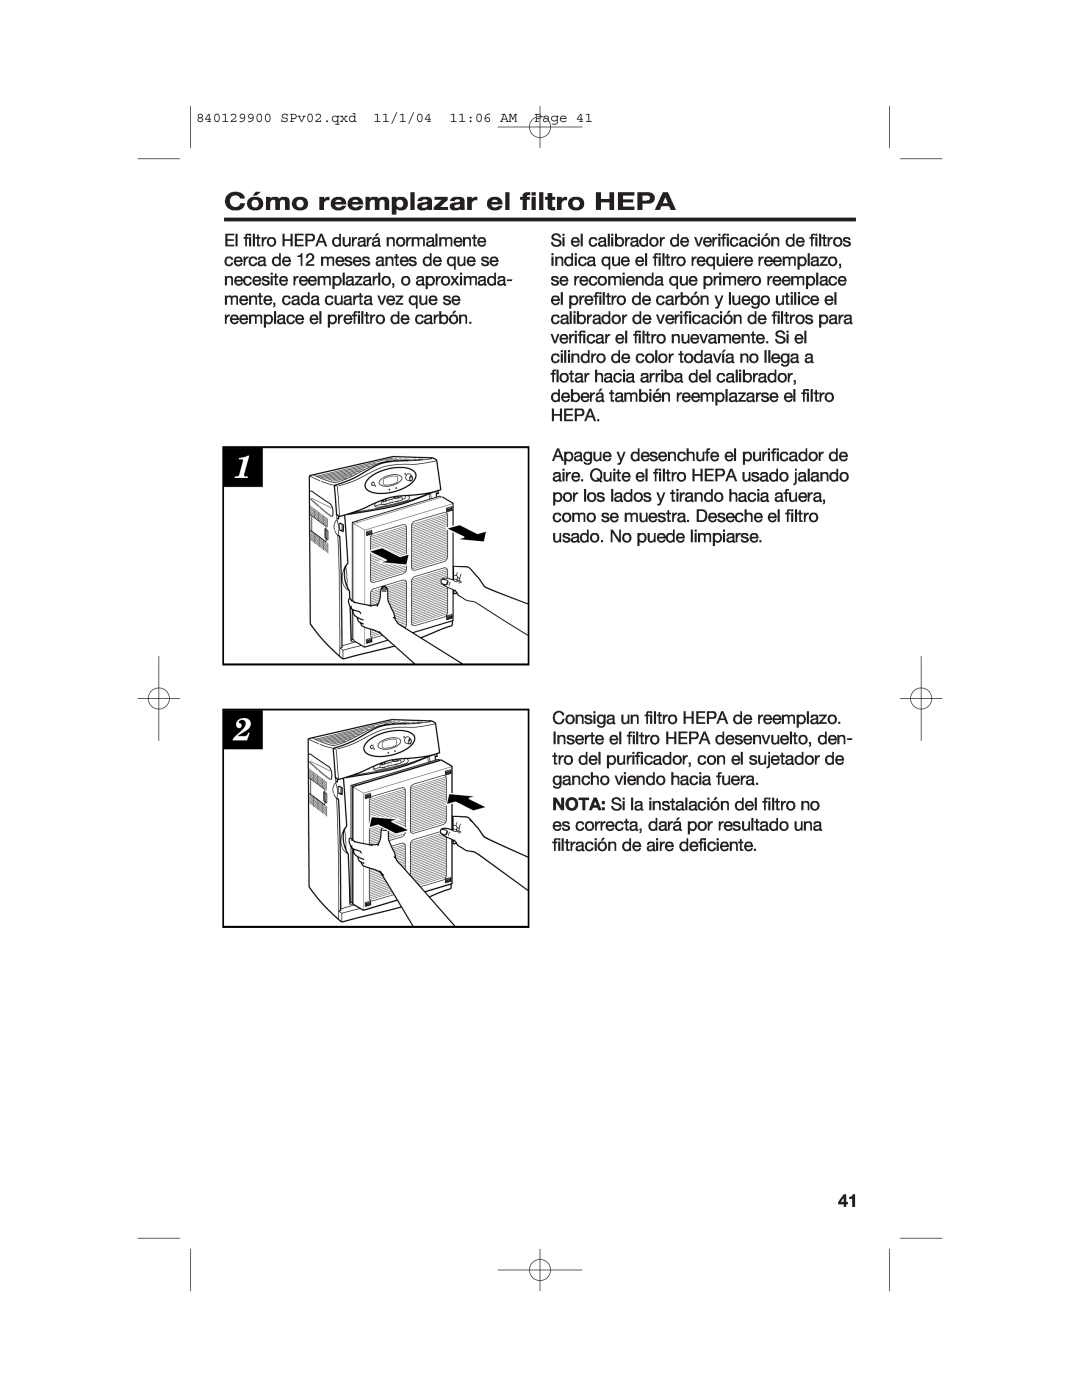 Hamilton Beach 04161, 04162, 04160 manual Cómo reemplazar el filtro HEPA, 840129900 SPv02.qxd 11/1/04 11 06 AM Page 